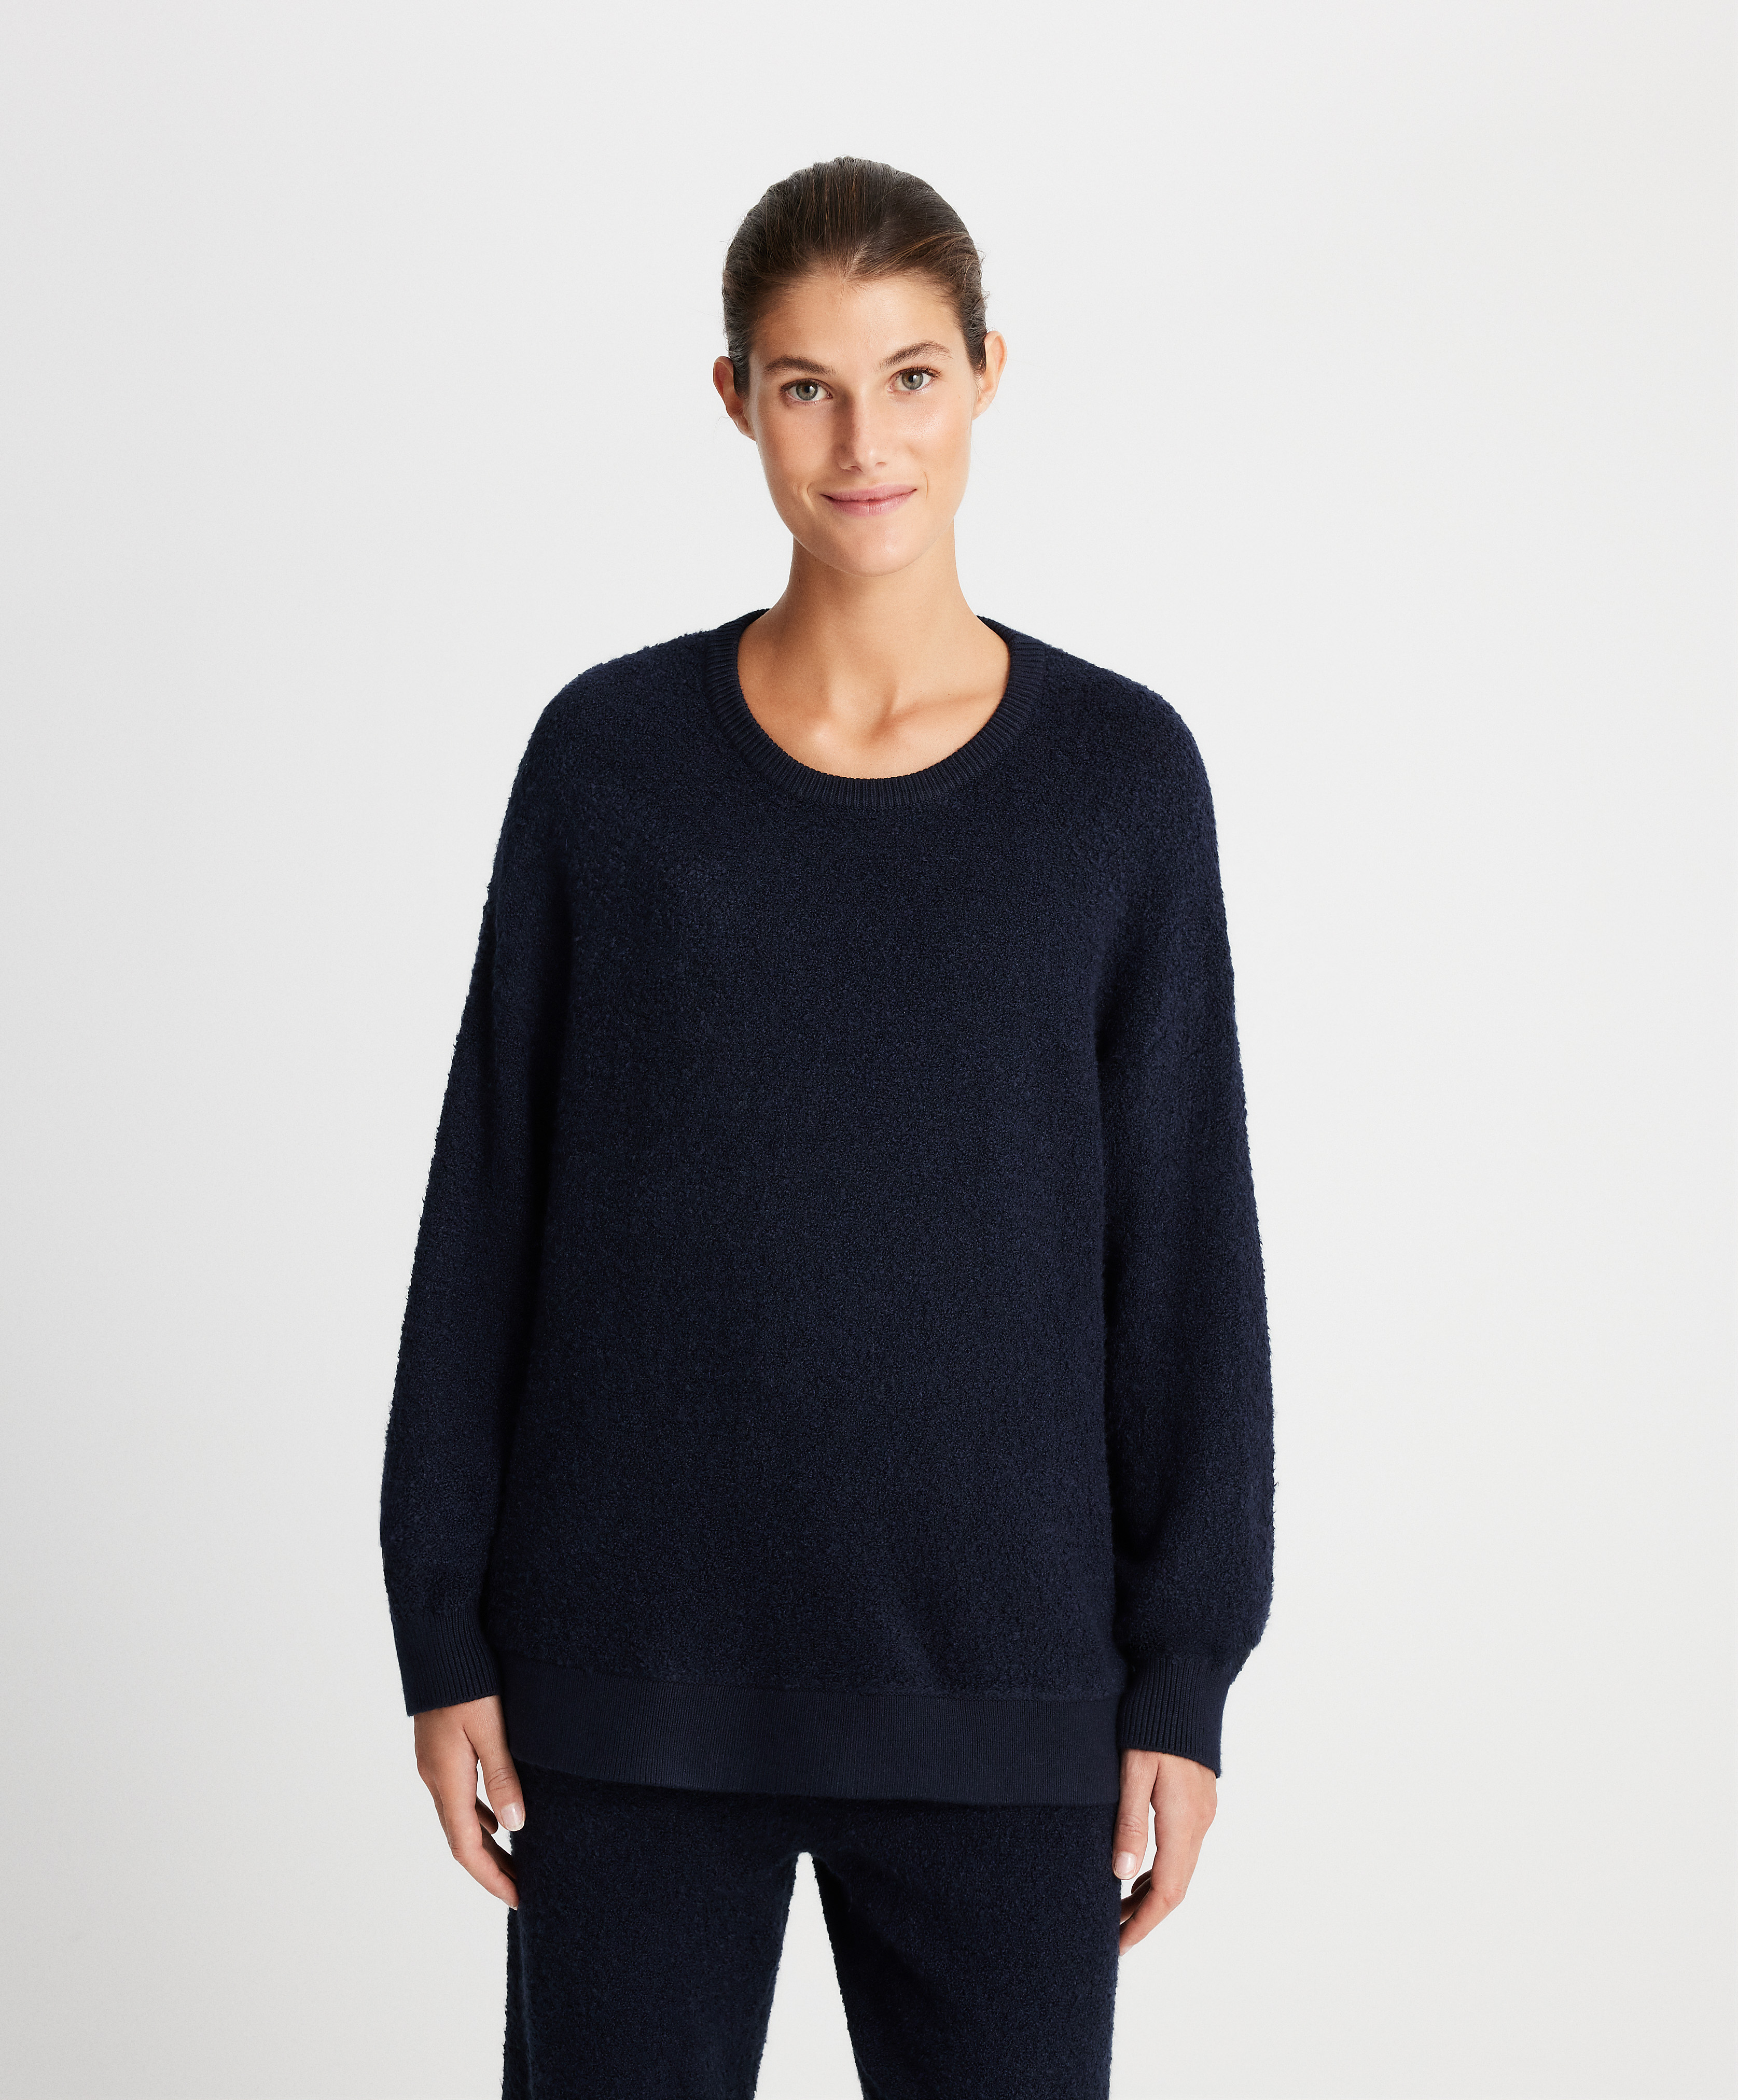 Loop-knit sweatshirt